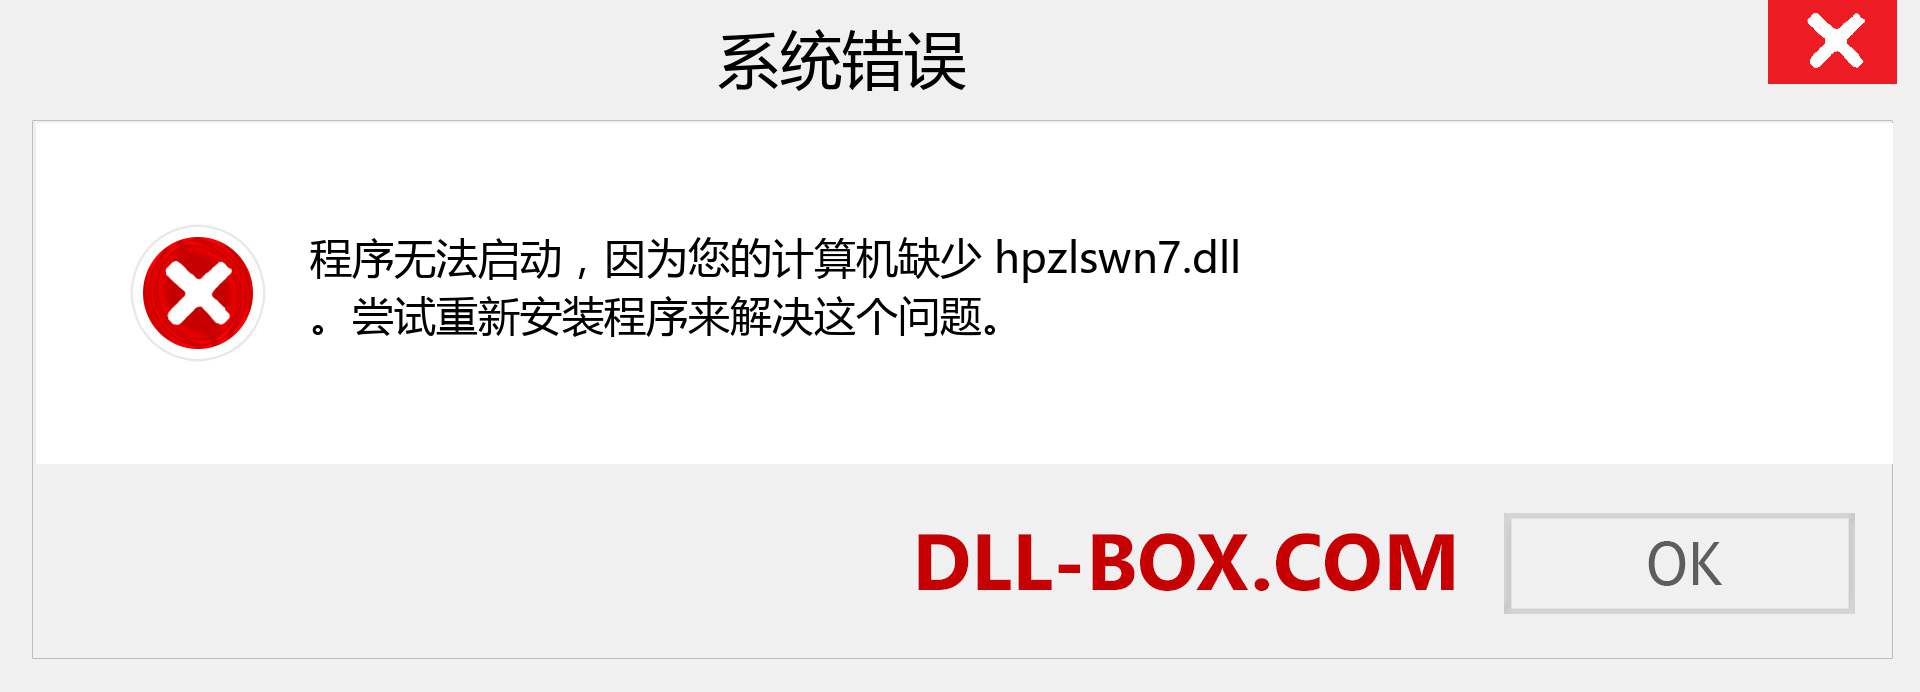 hpzlswn7.dll 文件丢失？。 适用于 Windows 7、8、10 的下载 - 修复 Windows、照片、图像上的 hpzlswn7 dll 丢失错误